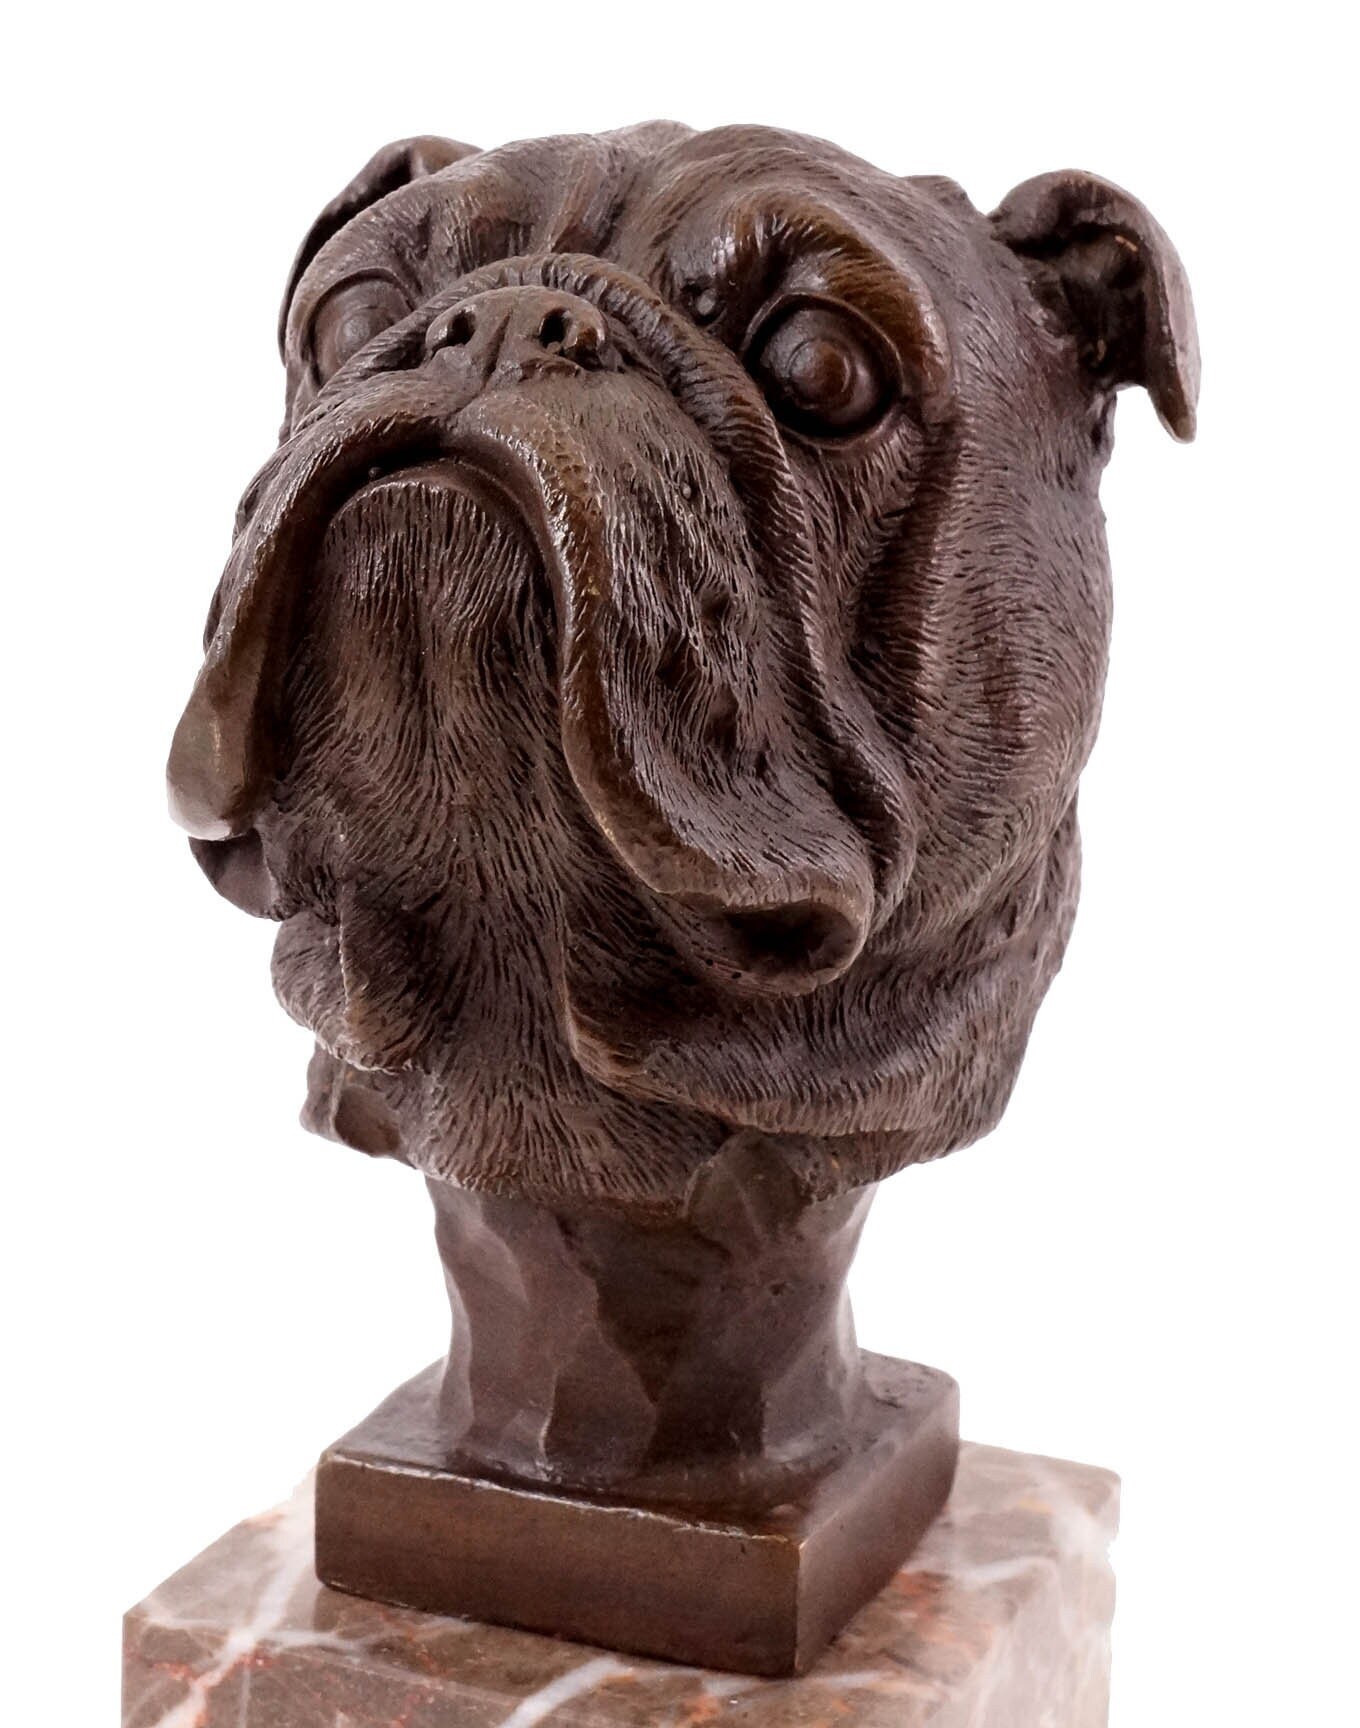  Französische Bulldogge Deko, Coole Bulldogge Figur Statue  Schlüsselschale mit Storage Tray, Big Mouth Harz Hunde Skulptur, Modern  Bulldog Sculpture für Flur Wohnzimmer Süßigkeiten Aufbewahrung ( Color